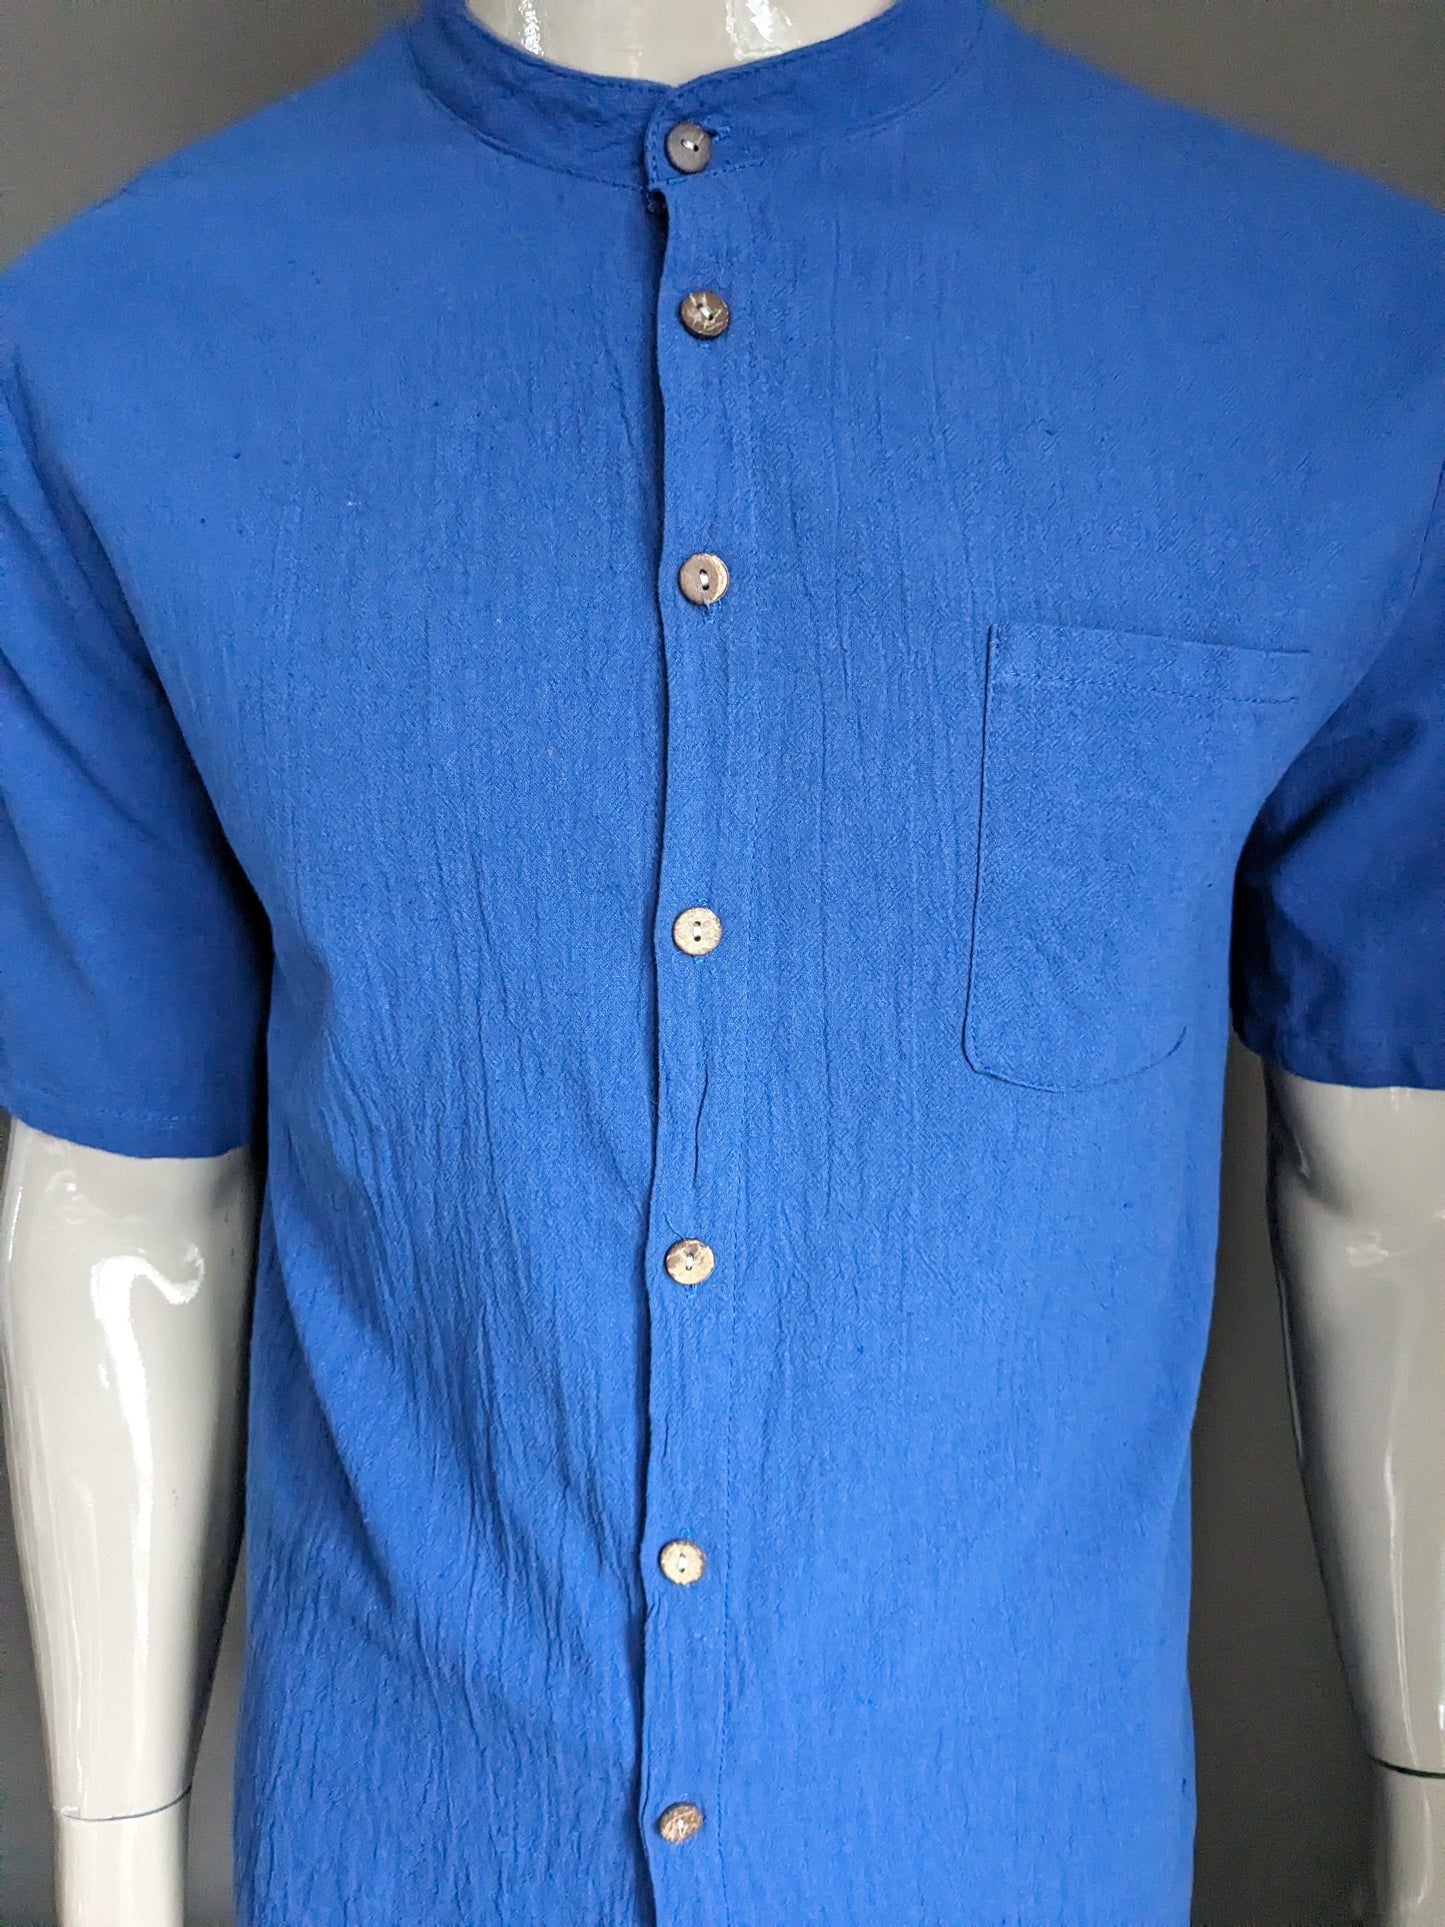 Vintage overhemd korte mouw met Mao / opstaande kraag. Blauw. Maat M.